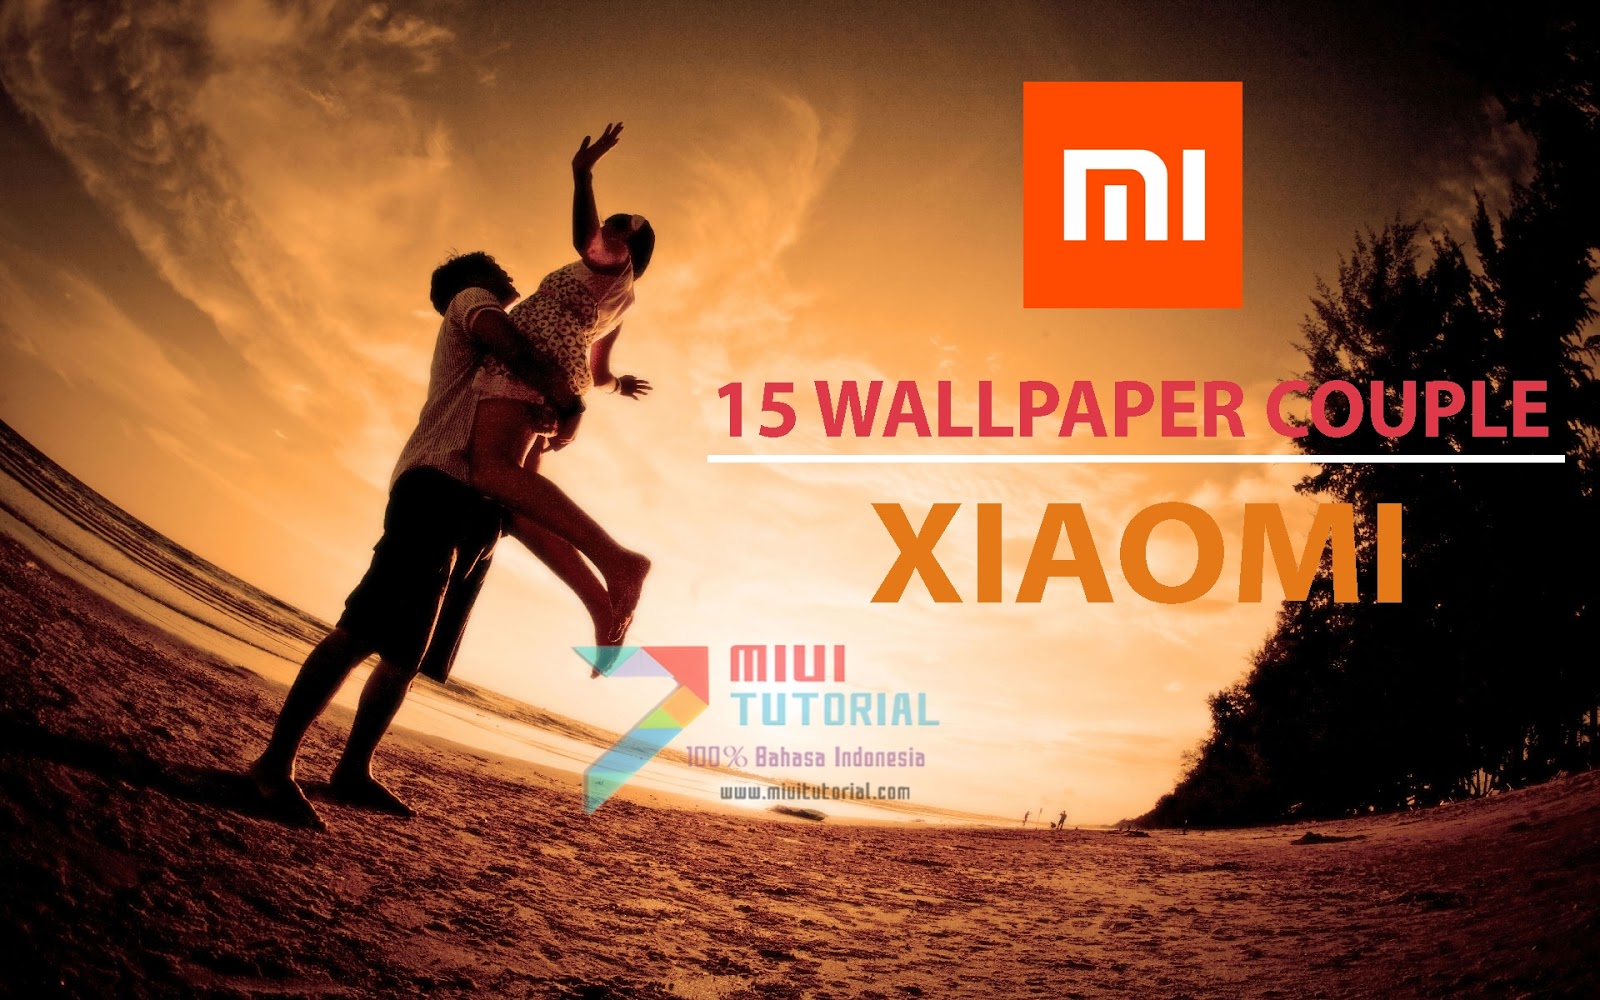 Ingin Bisa Semakin Mesra Dengan Pacarnya Coba 15 Wallpaper Couple Xiaomi Berikut Ini Para Jomblo Harap Jangan Anarkis